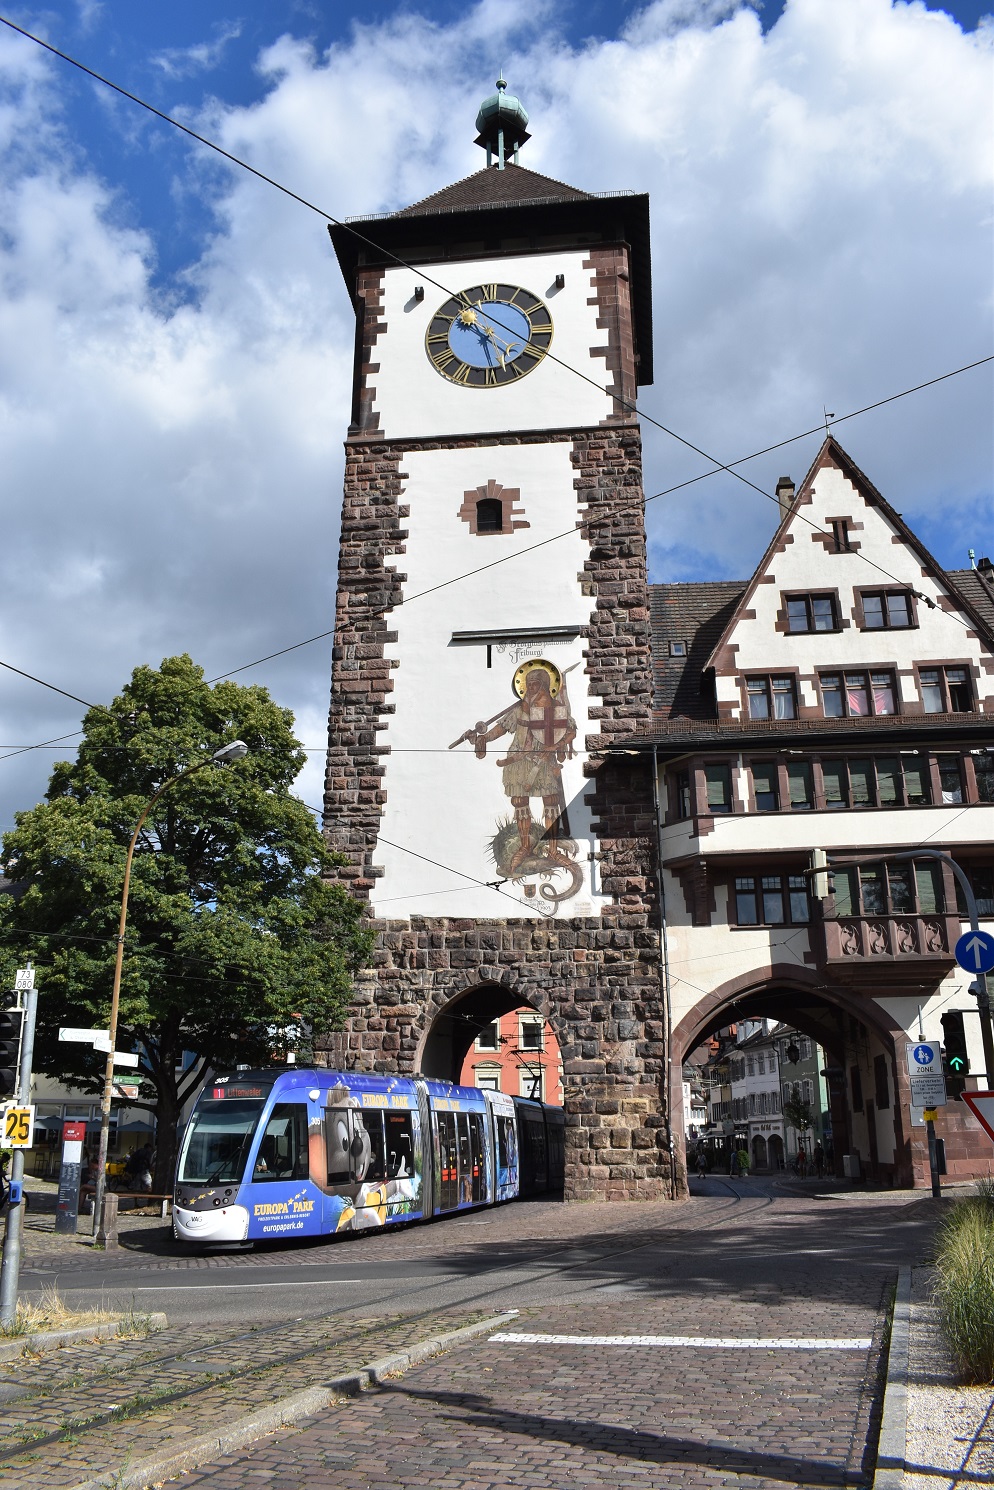 Freiburg im Breisgau — Tramway Lines and Infrastructure